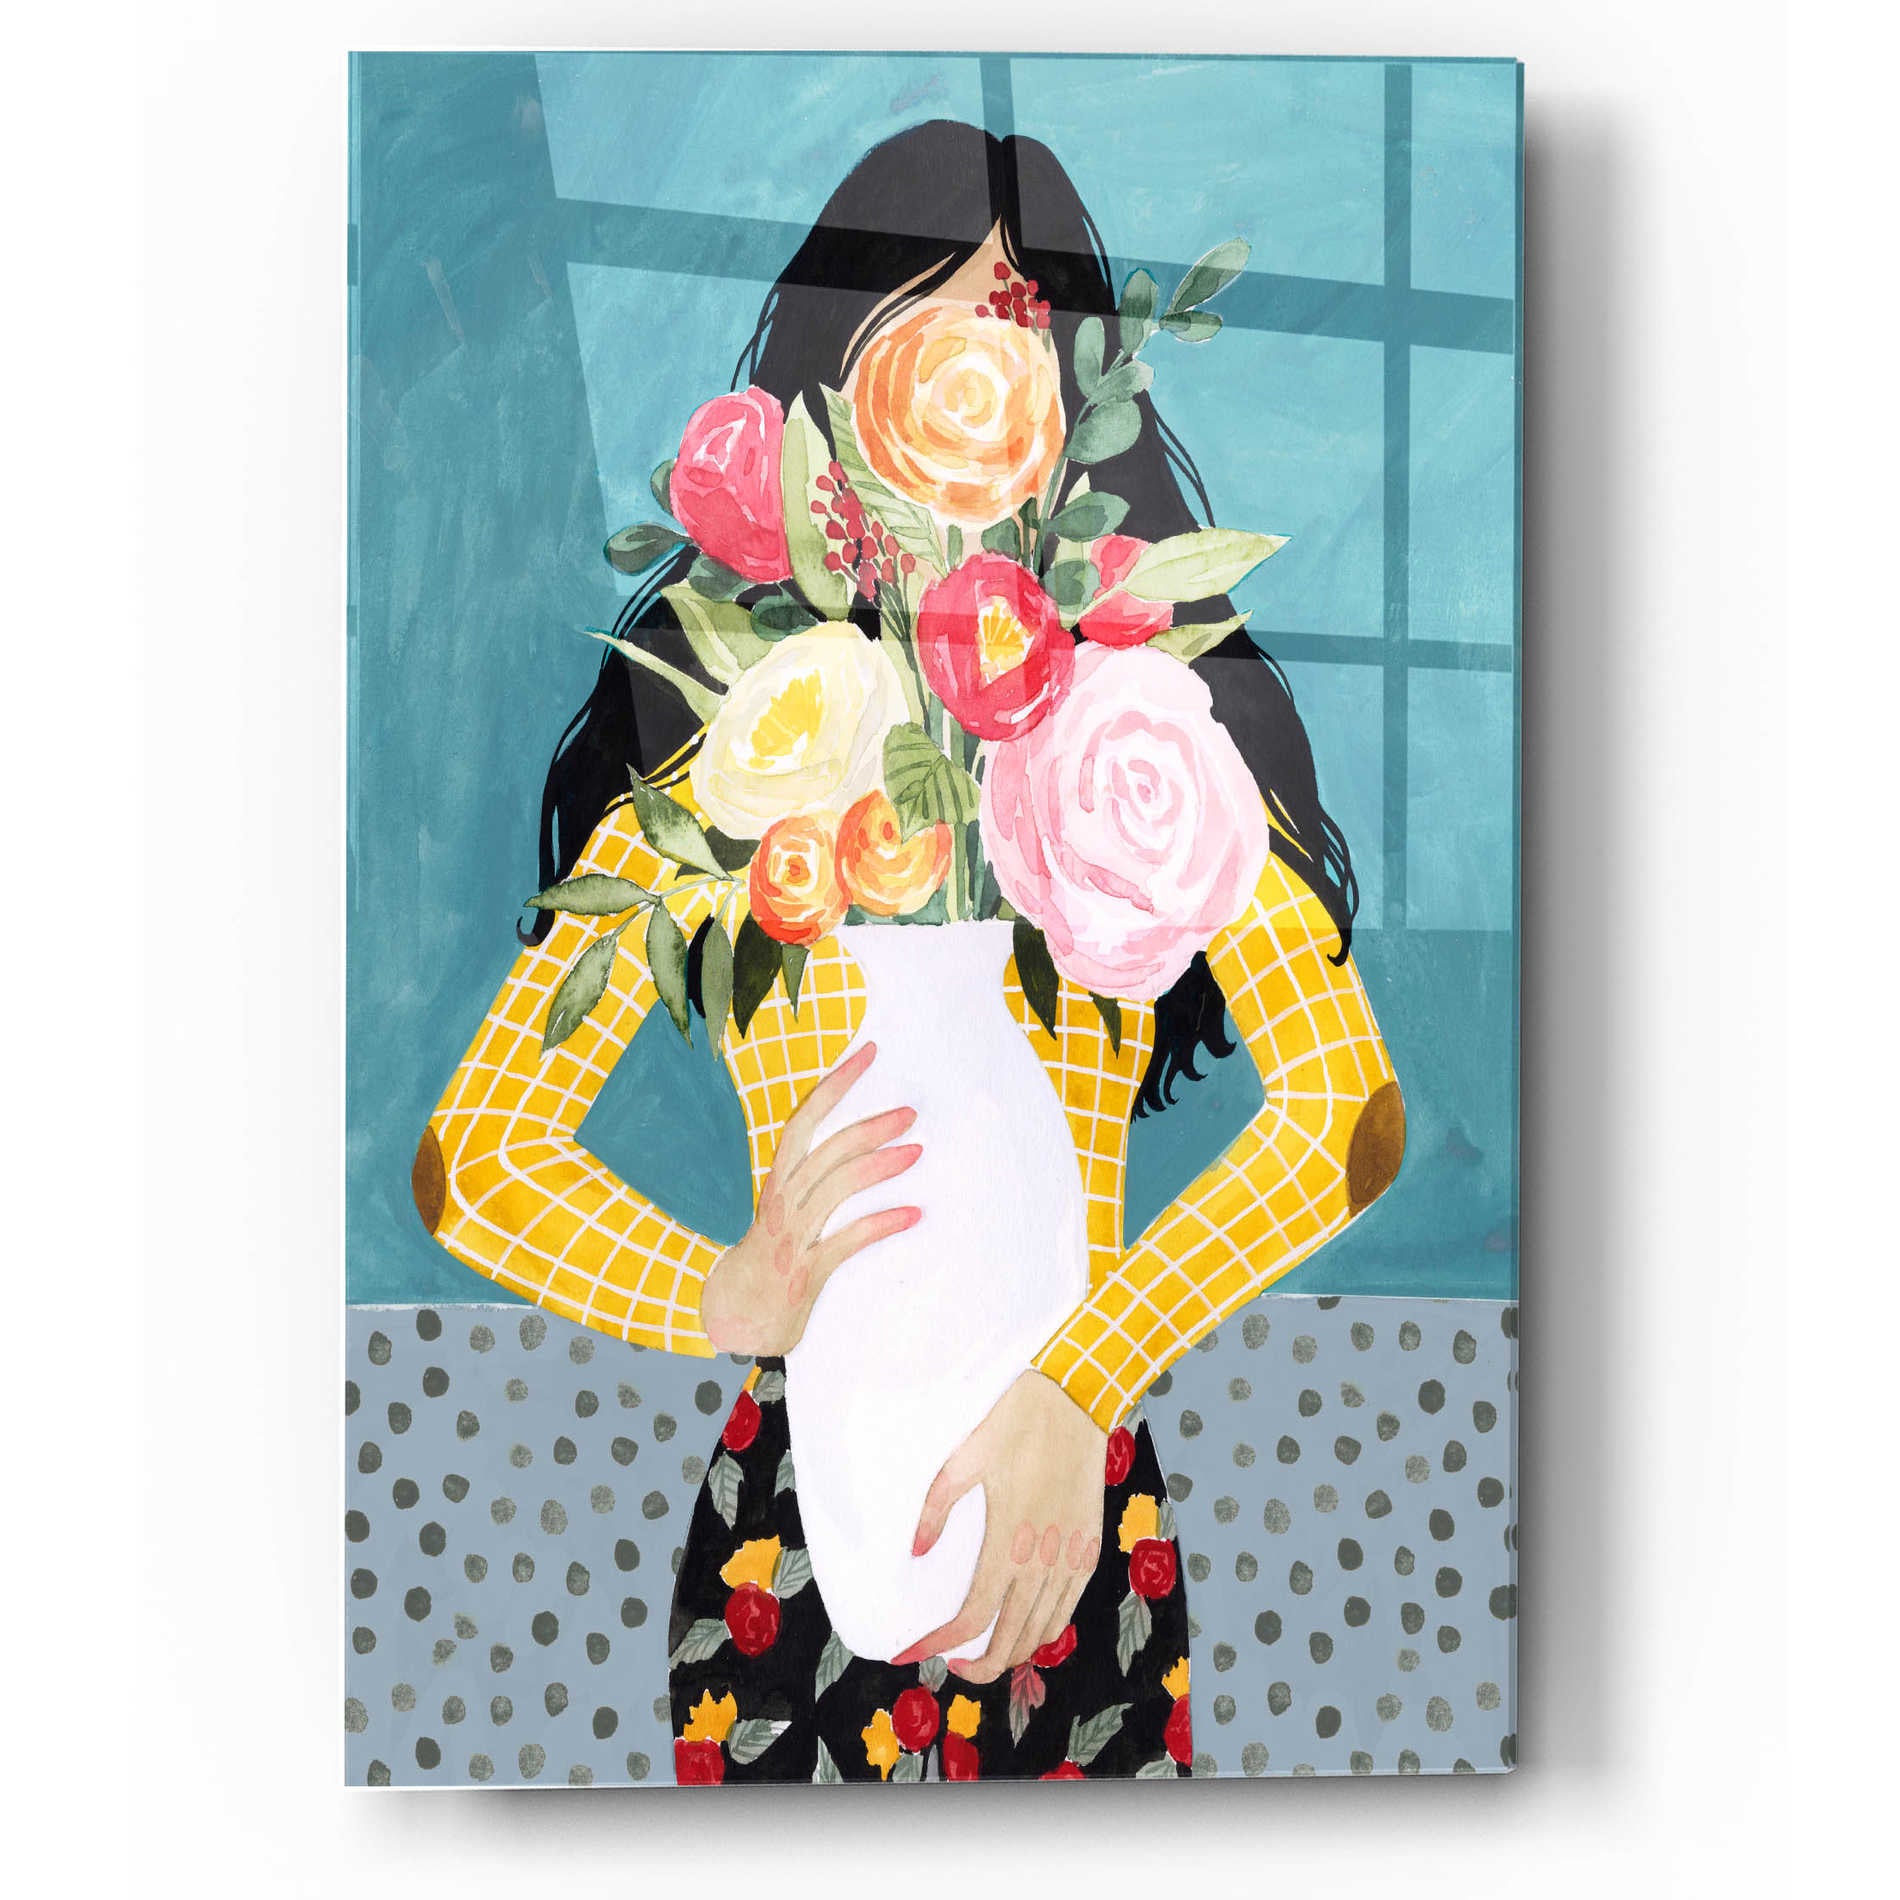 Epic Art 'Flower Vase Girl II' by Grace Popp, Acrylic Wall Glass,12x16